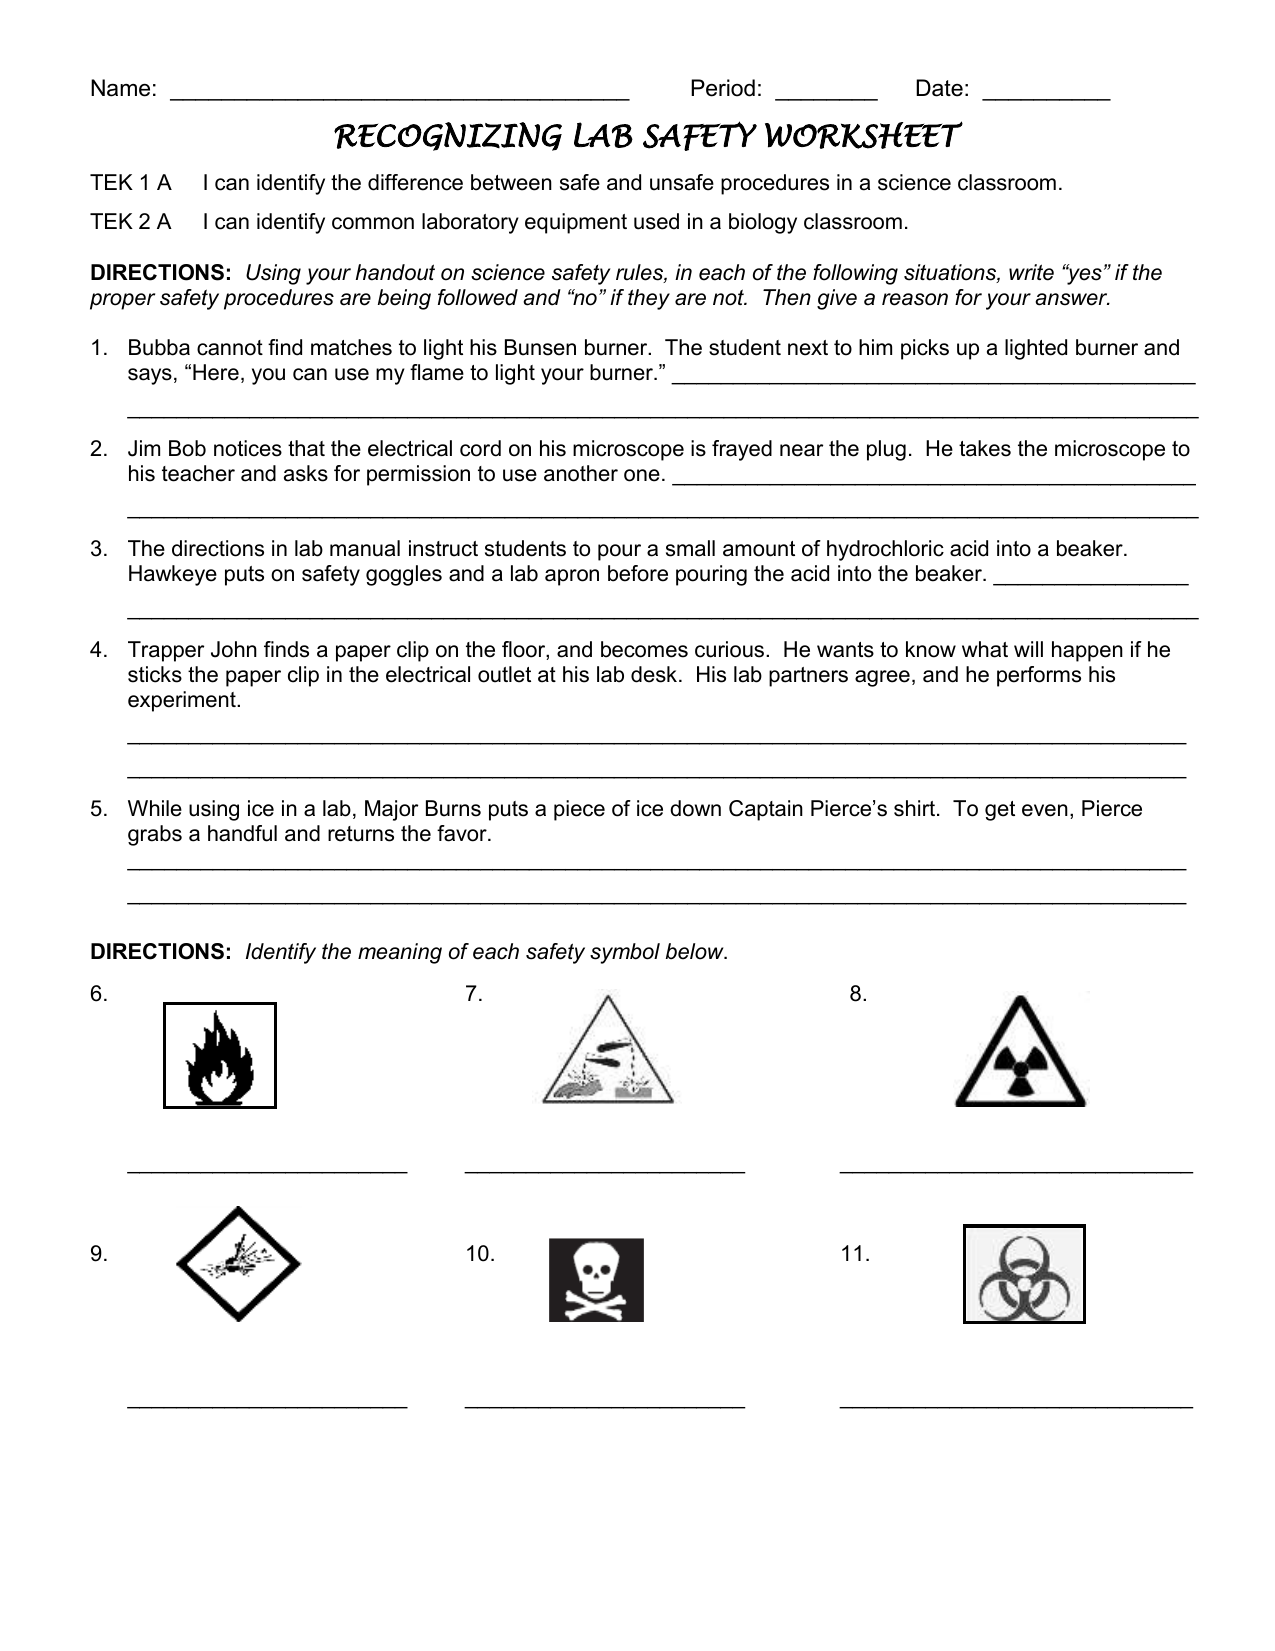 Lab Safety Worksheet 11 With Lab Safety Symbols Worksheet